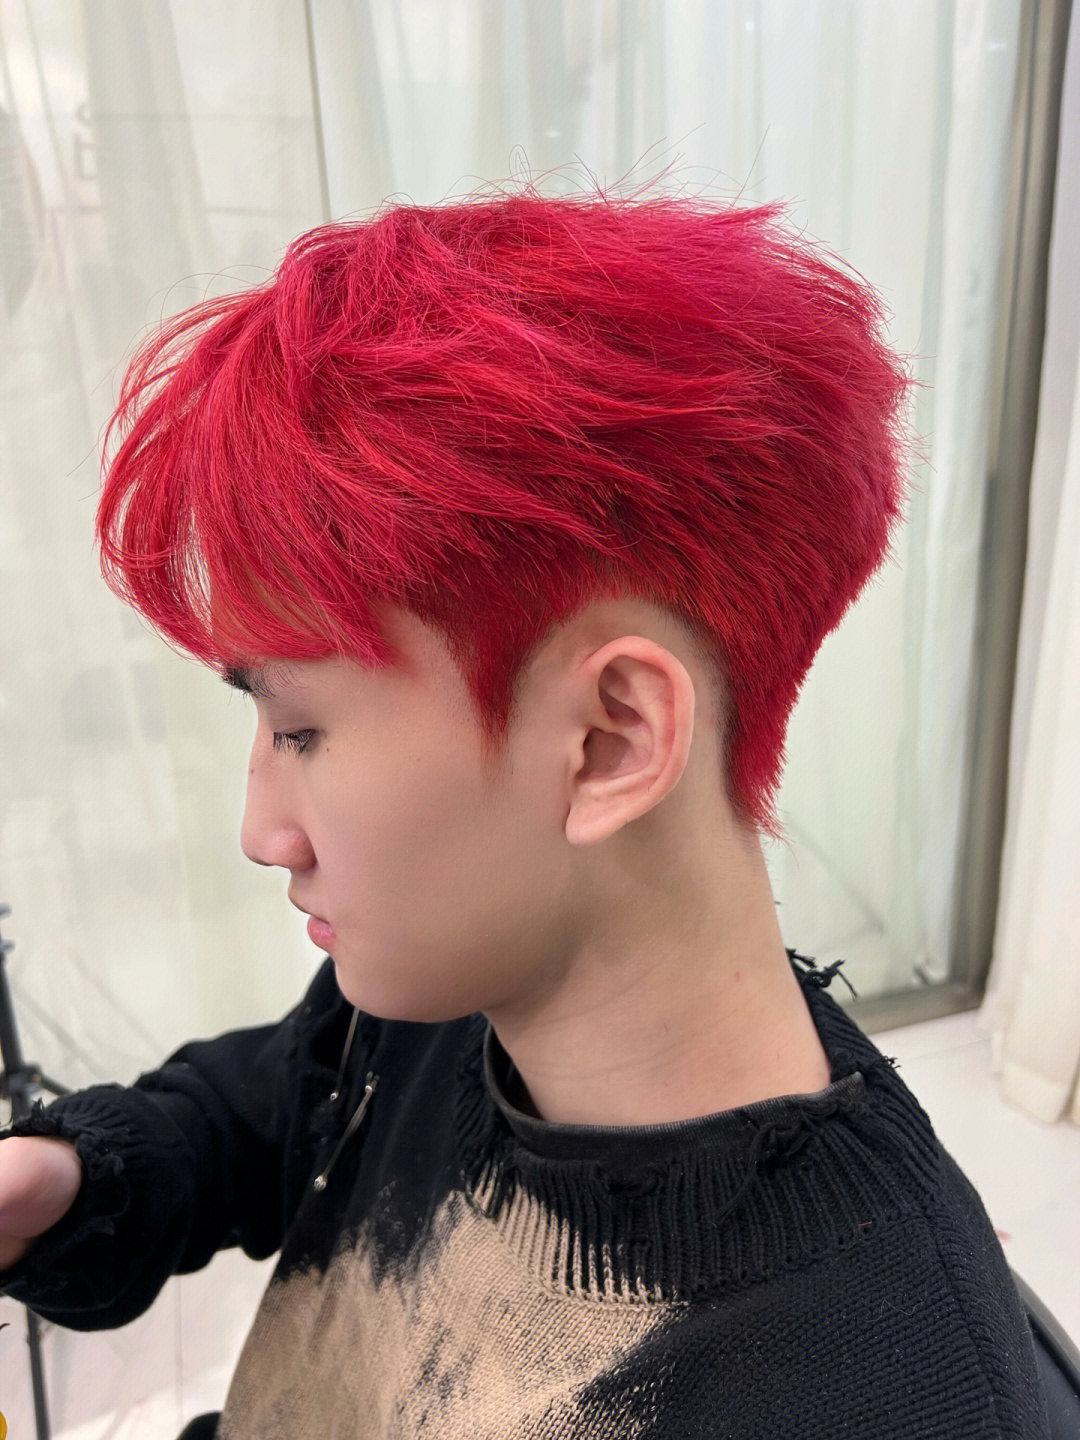 即使是中国人最爱的大红色,也是要,皮肤越白衬着才越好看海王红头发